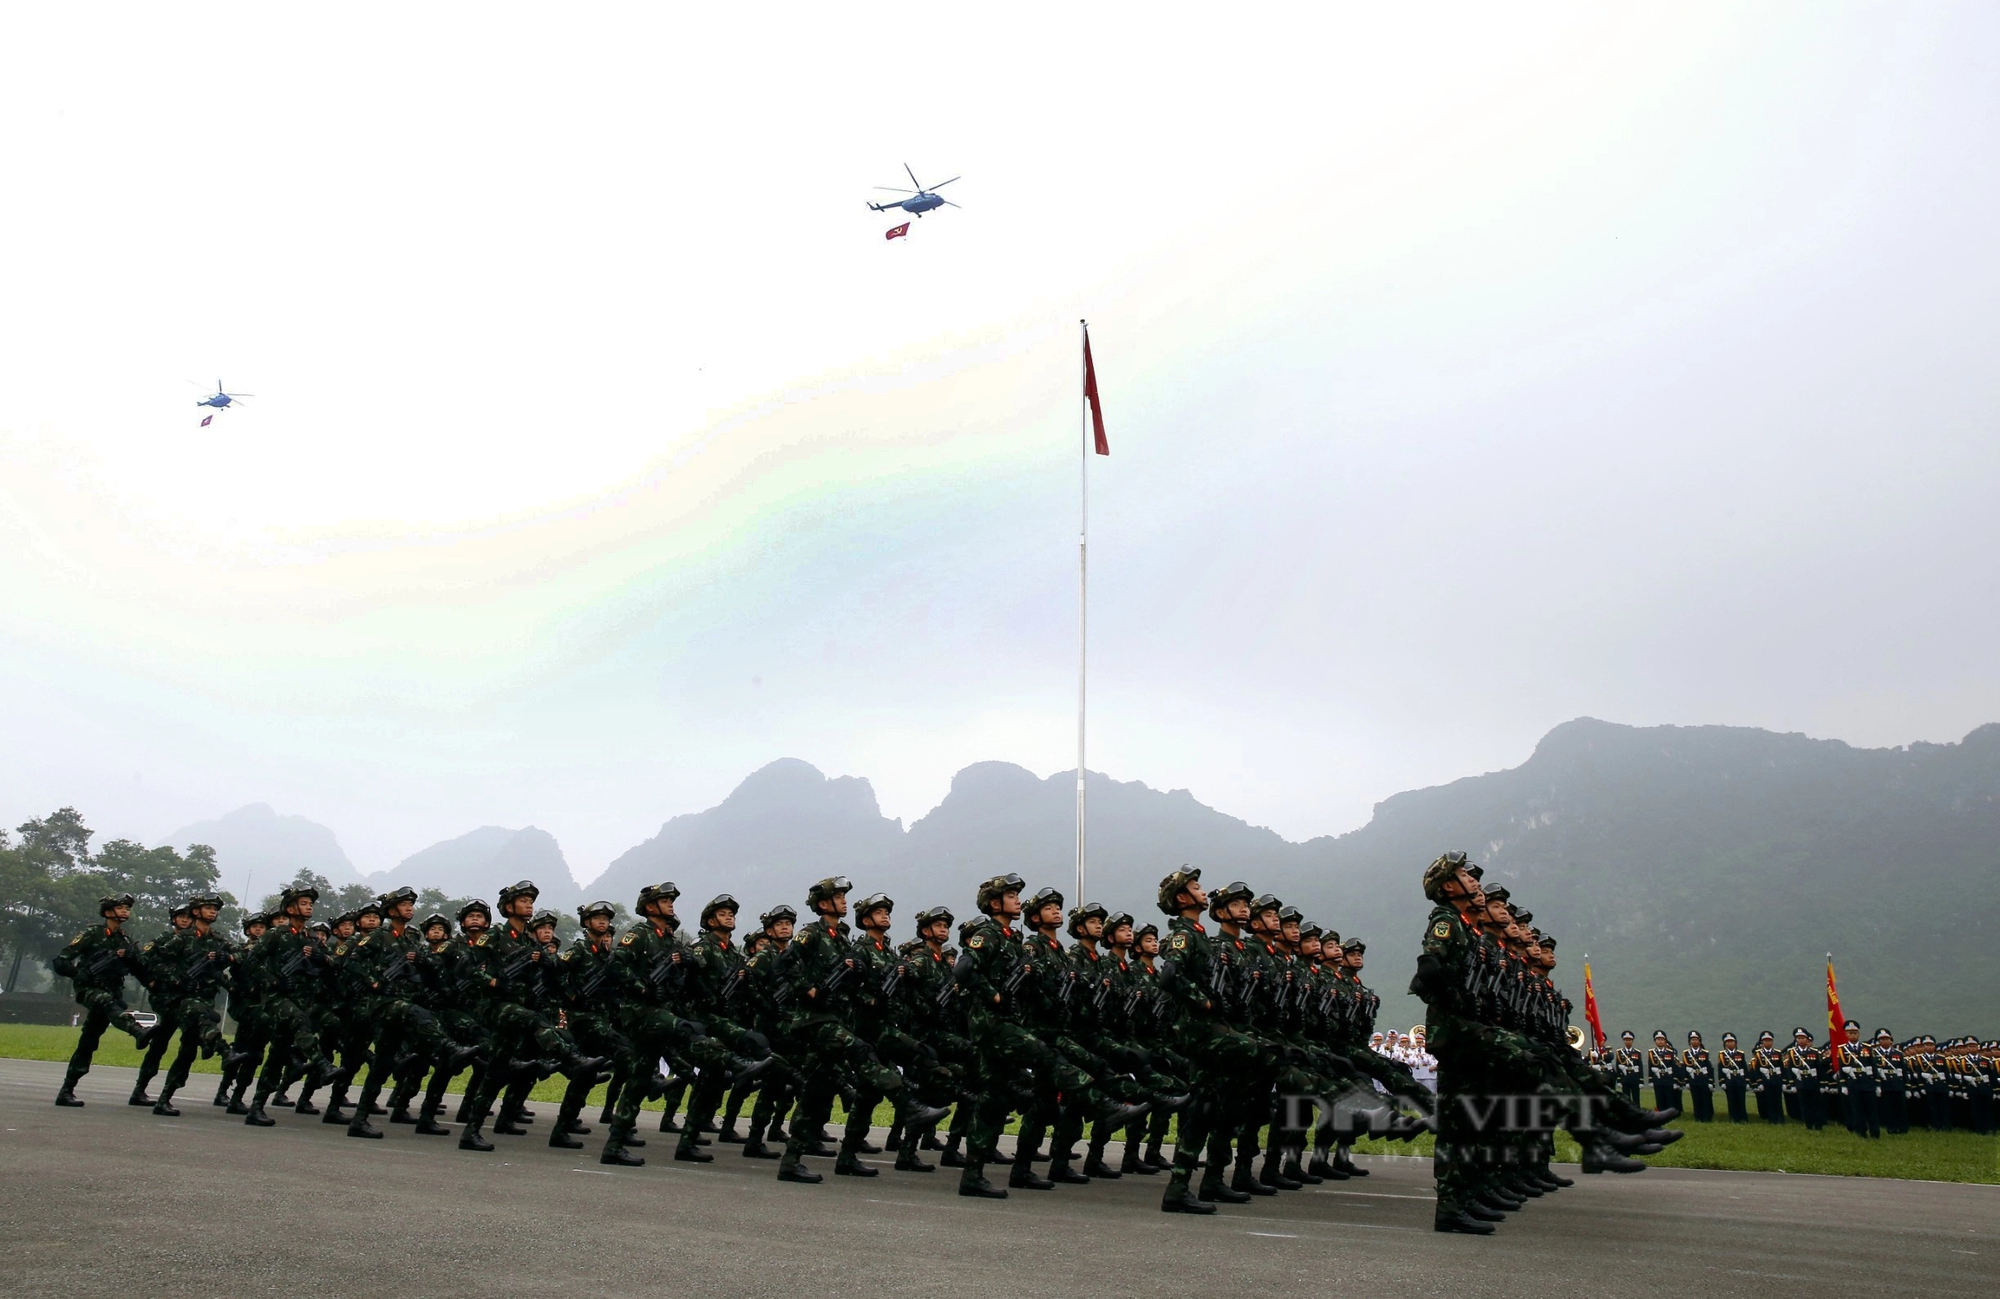 Hợp luyện diễu binh - diễu hành lần cuối, 9 máy bay trực thăng bay trên bầu trời Hà Nội- Ảnh 1.